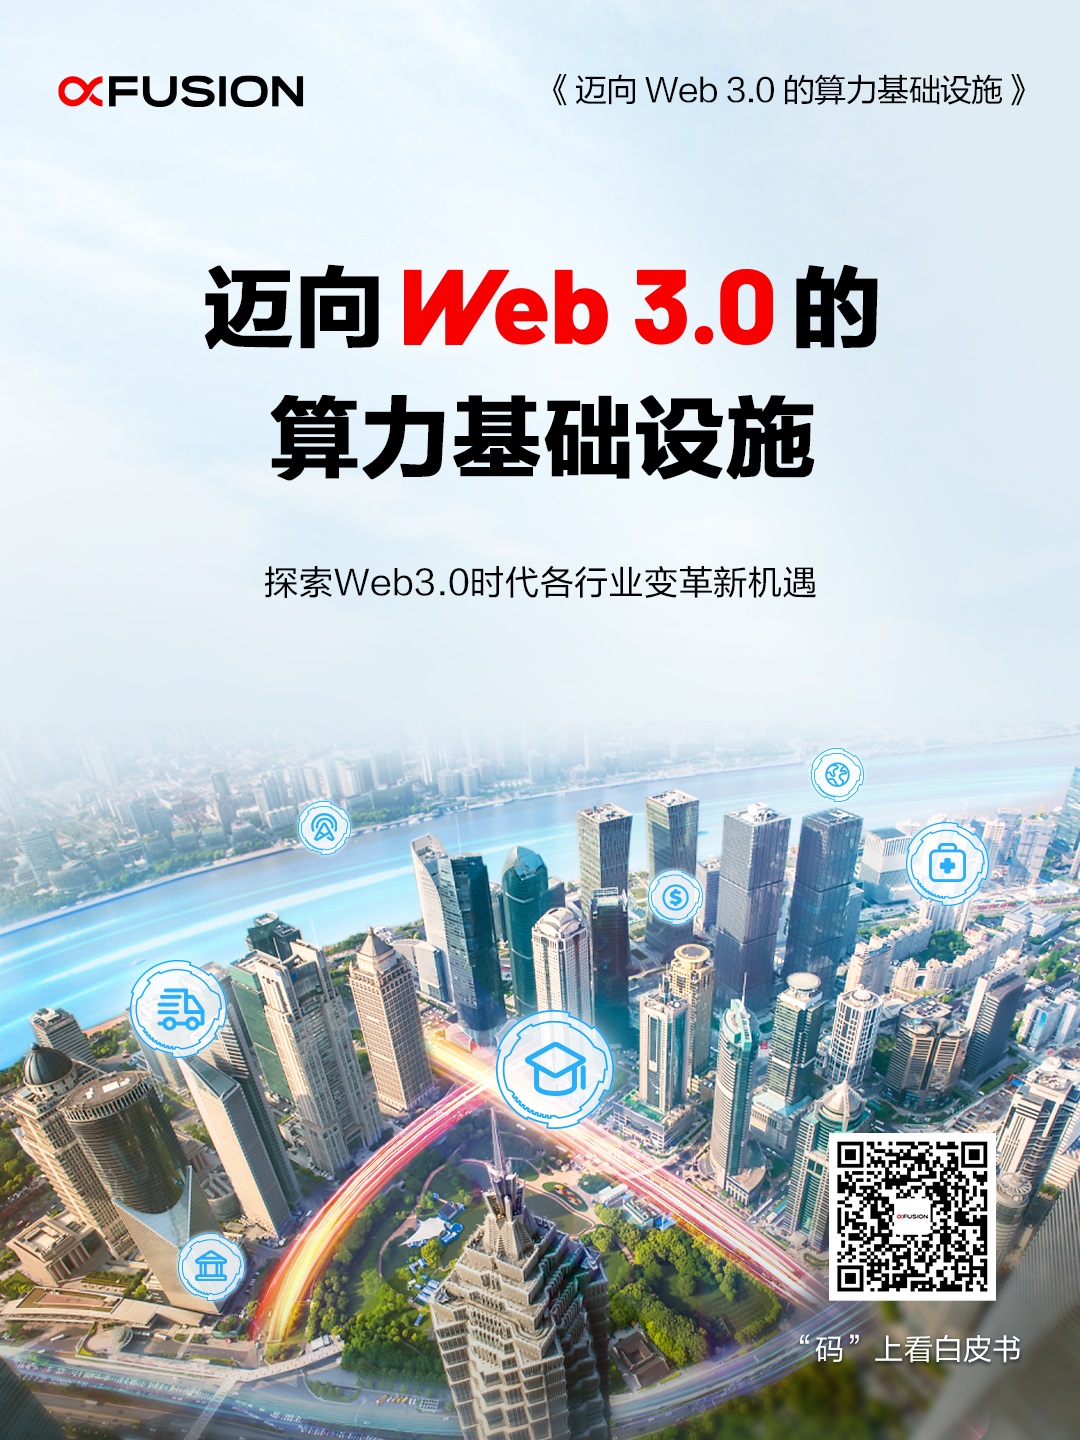 超聚变发布《迈向Web 3.0的算力基础设施》白皮书